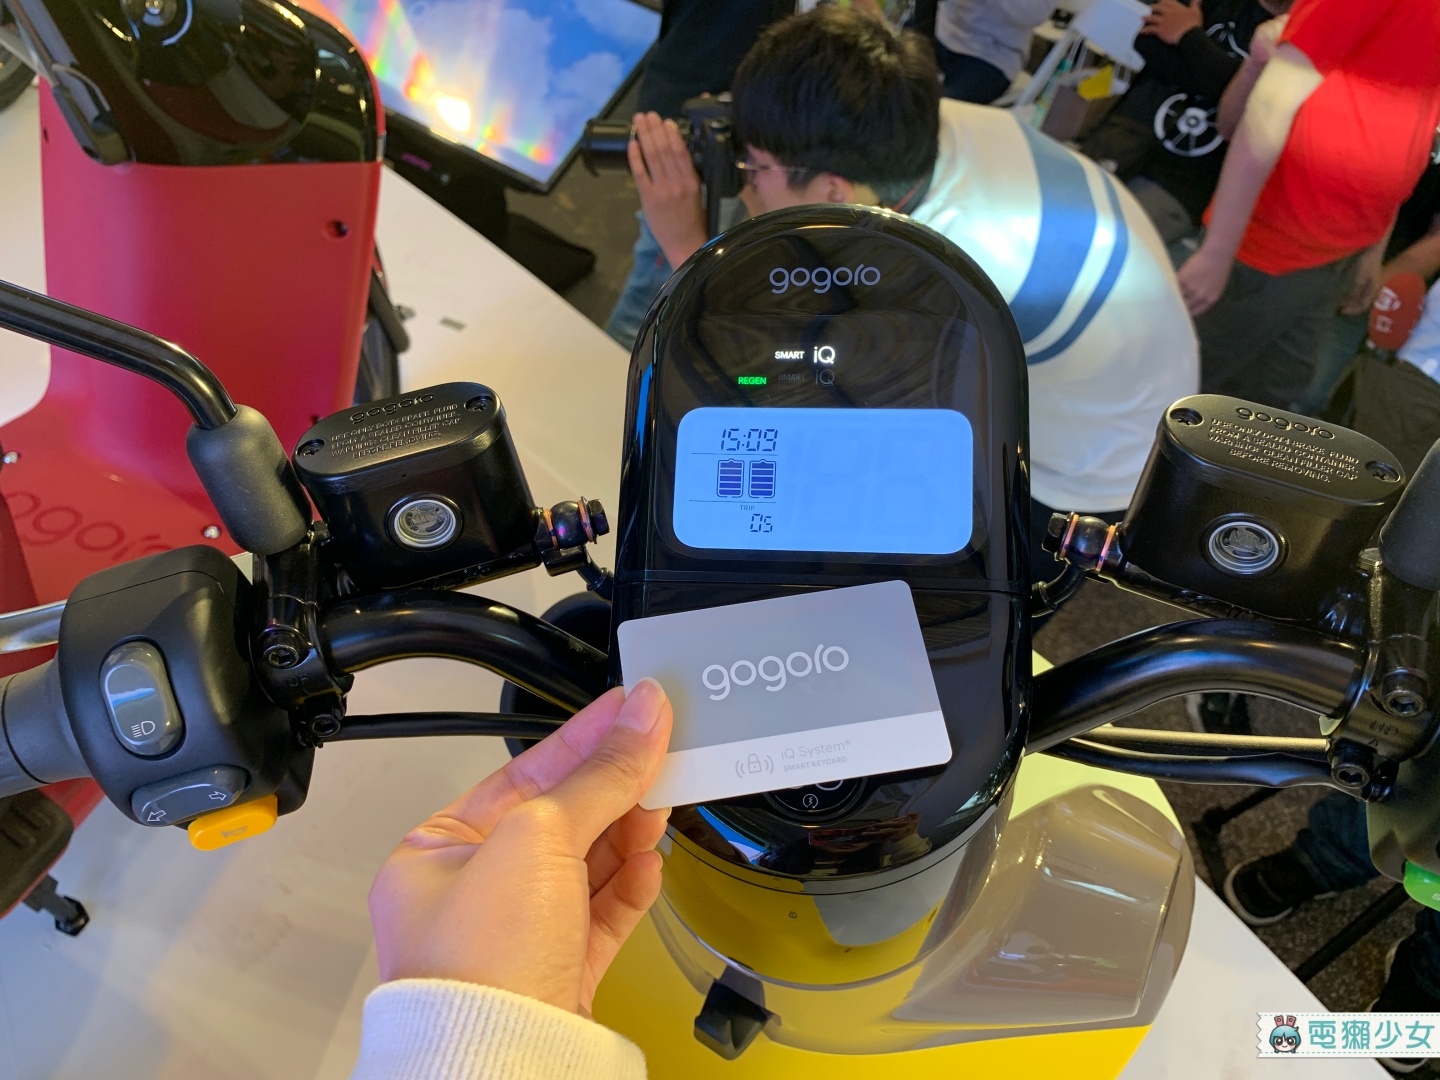 出門｜Gogoro 3系列發表！全新外觀、撞色設計  智慧鑰匙卡NFC感應啟動車子！